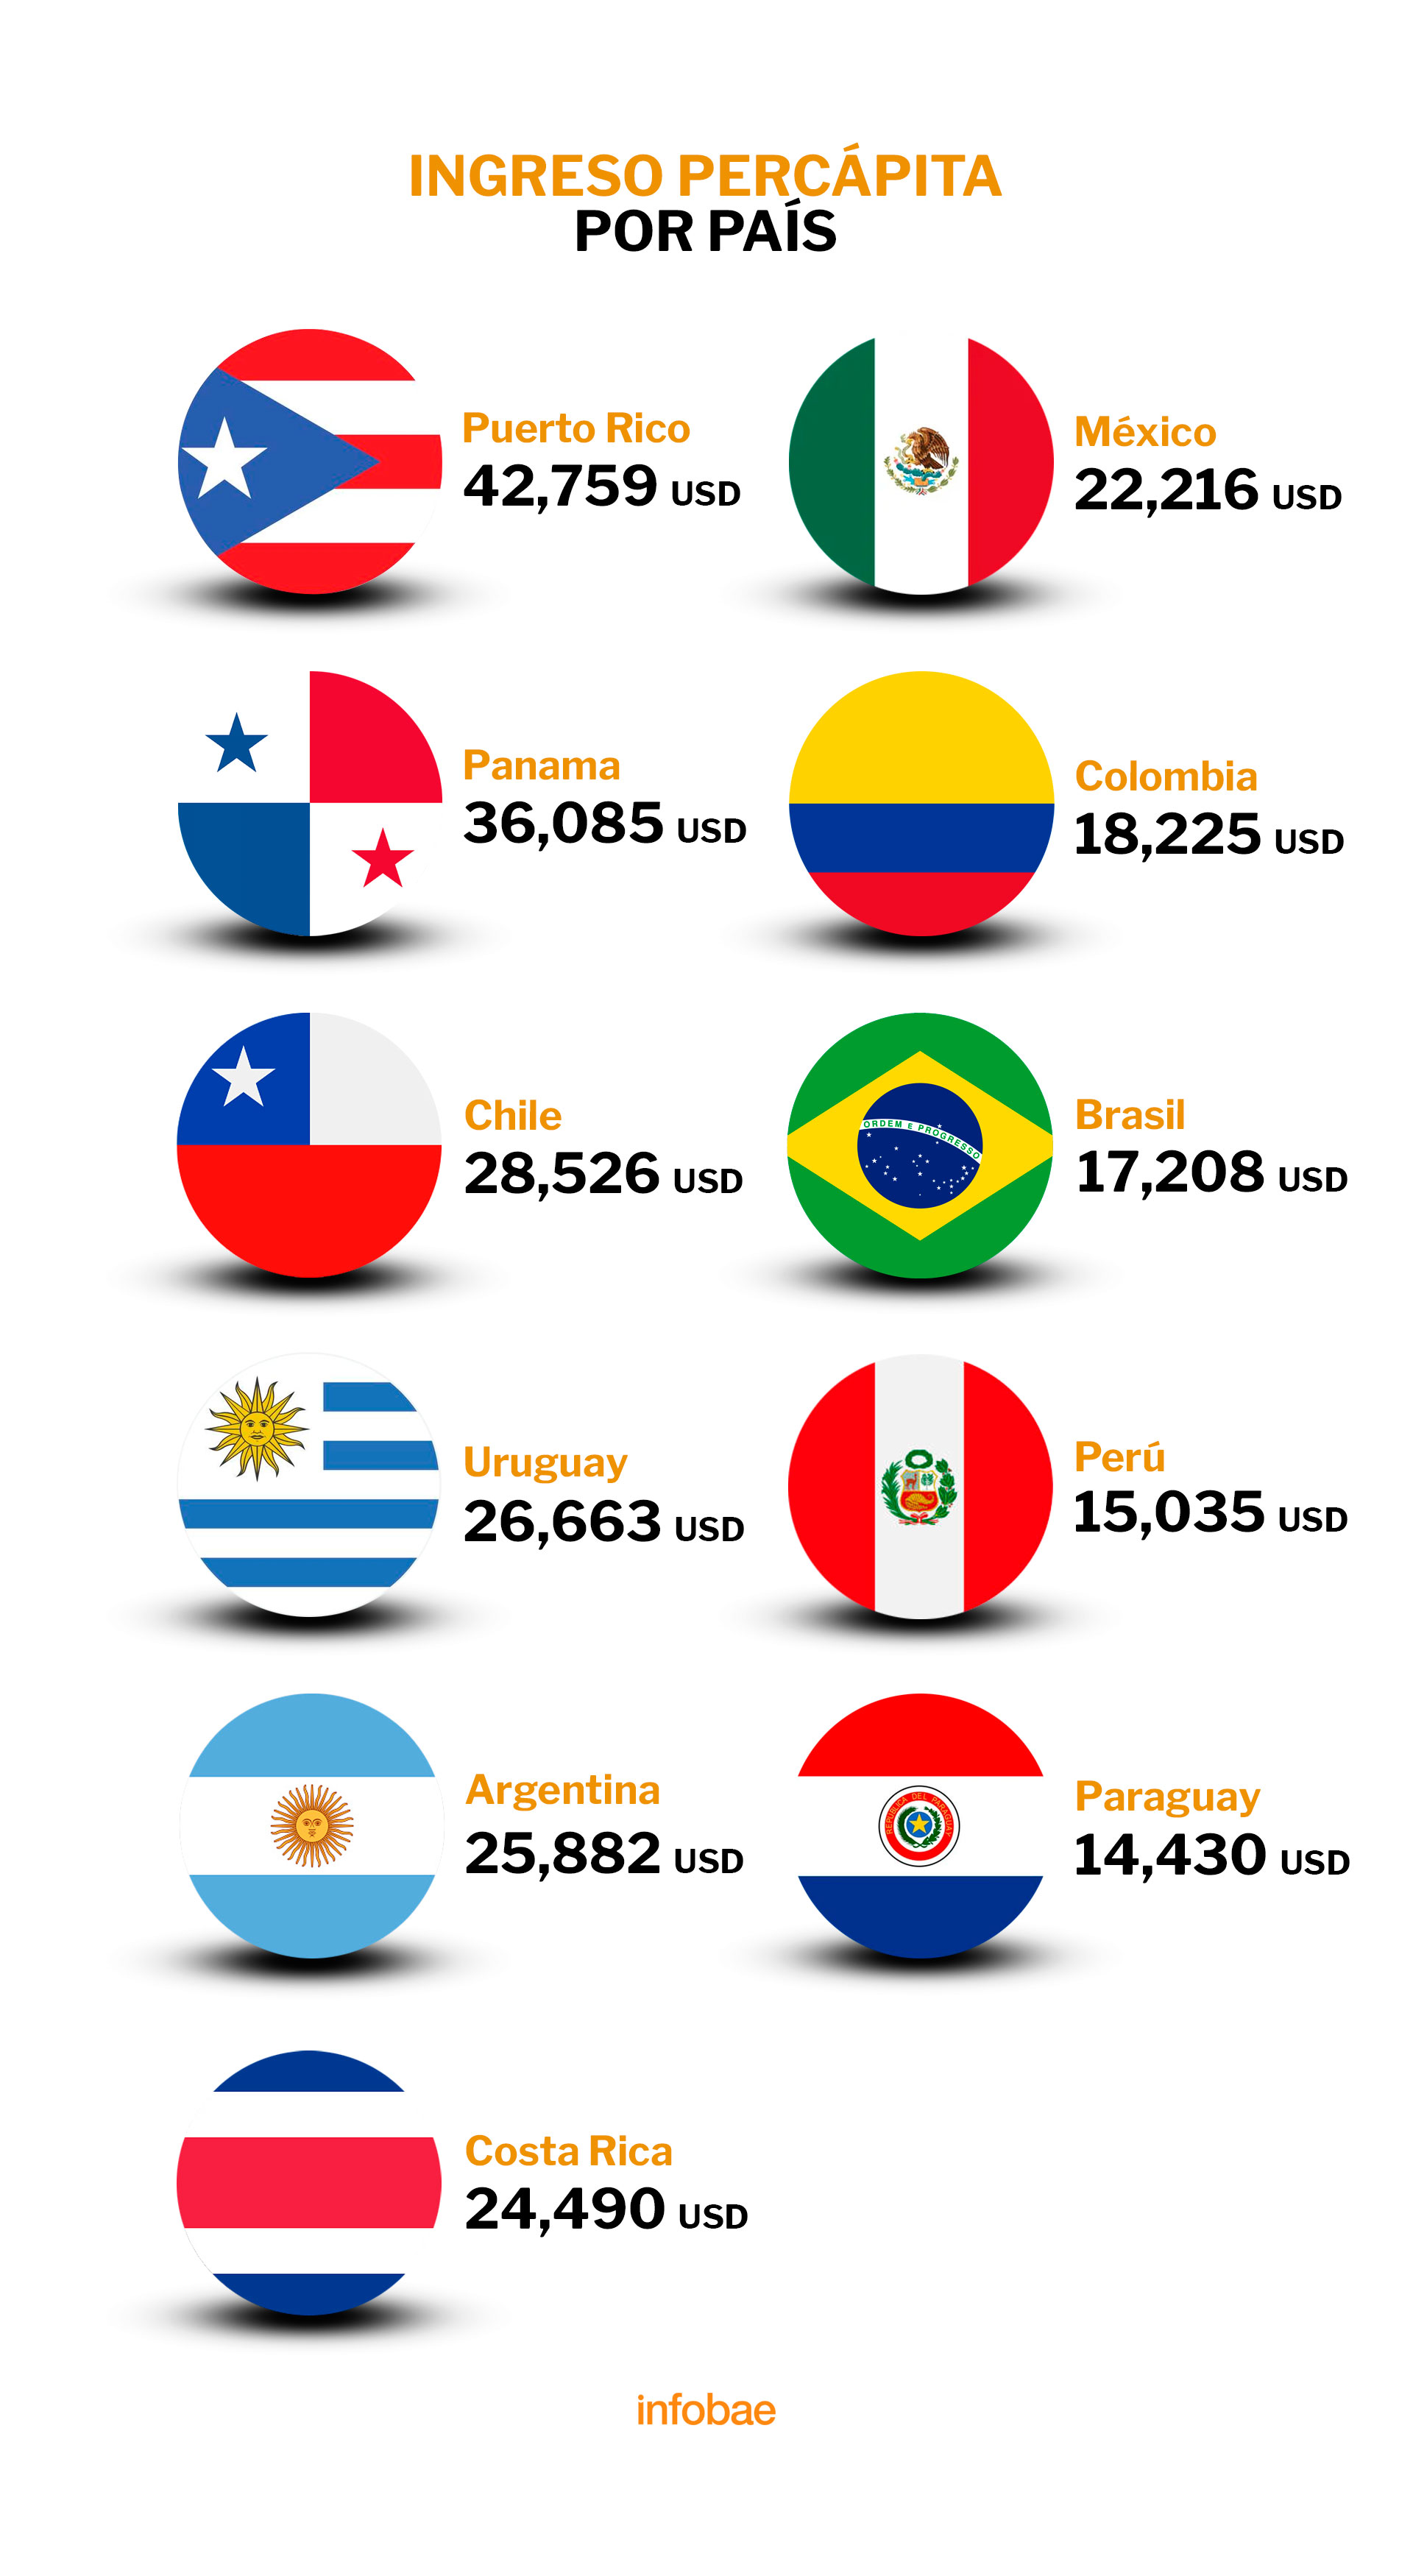 ¿Cuál es el país más rico de América Latina